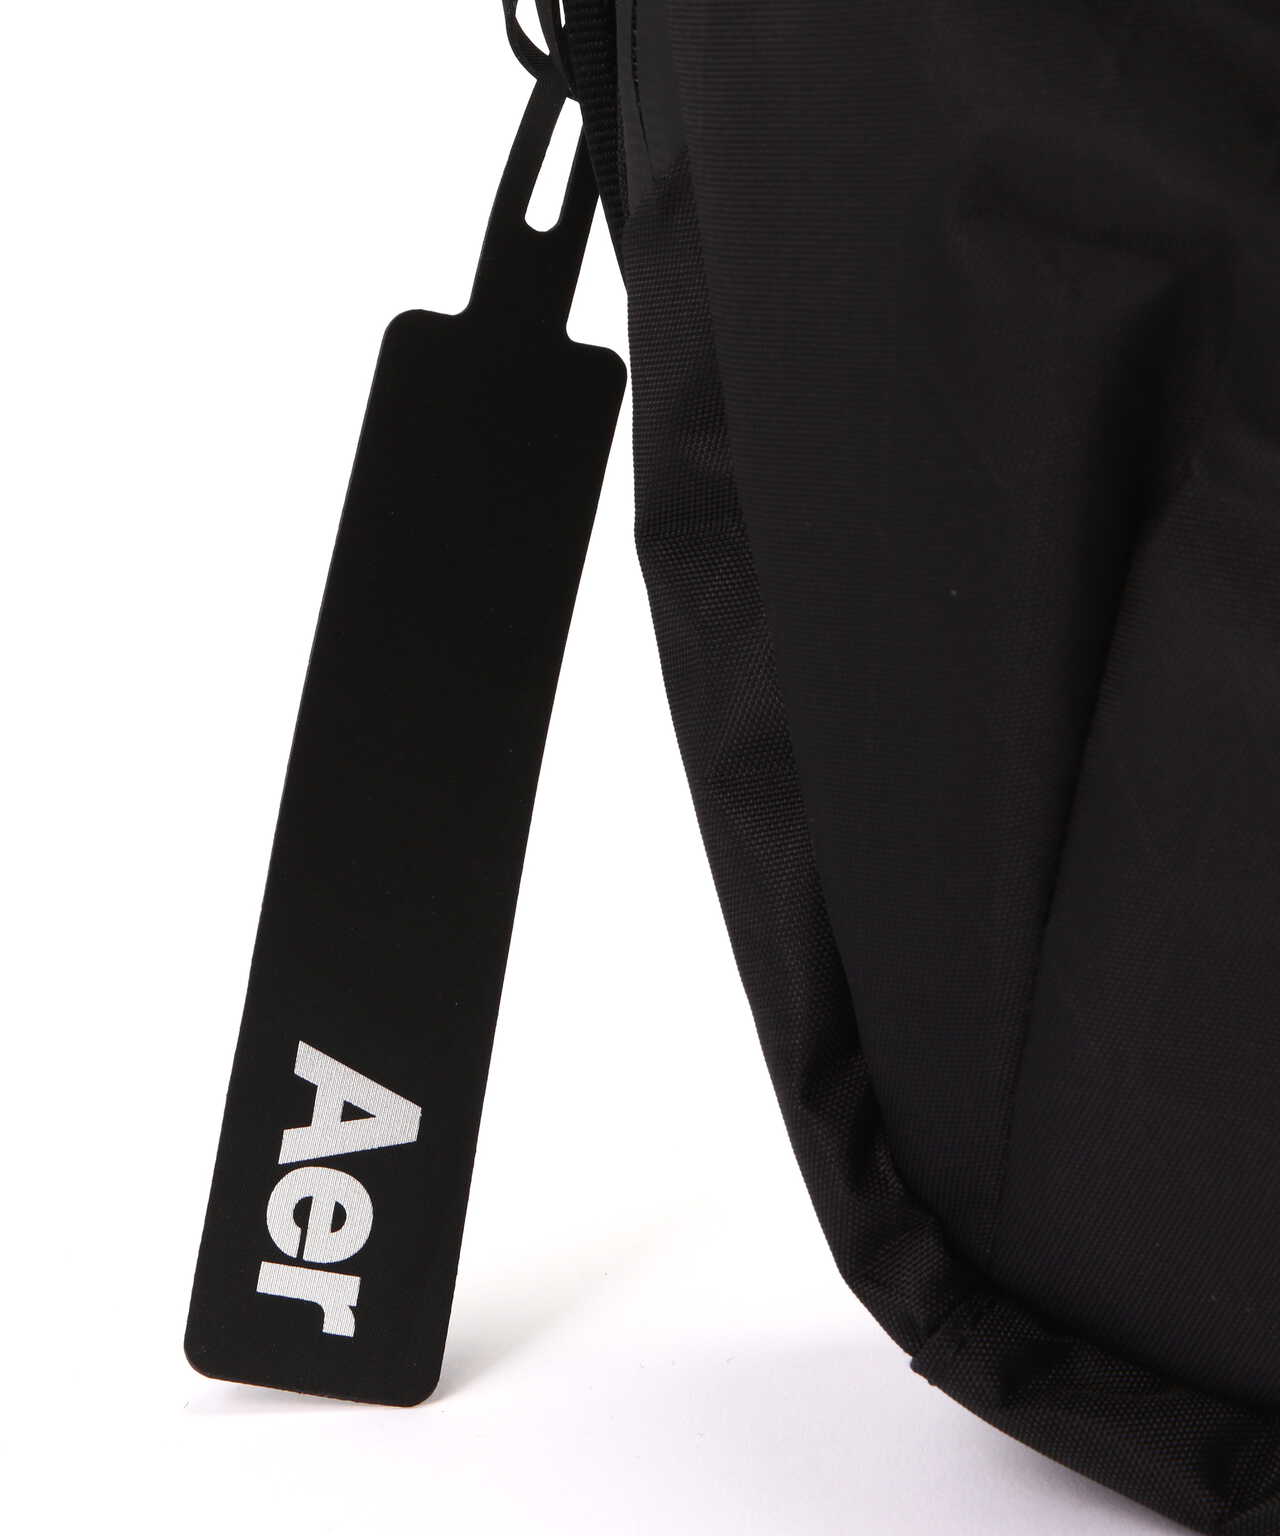 Aer（エアー）Slim Pack X-PAC AER-91007